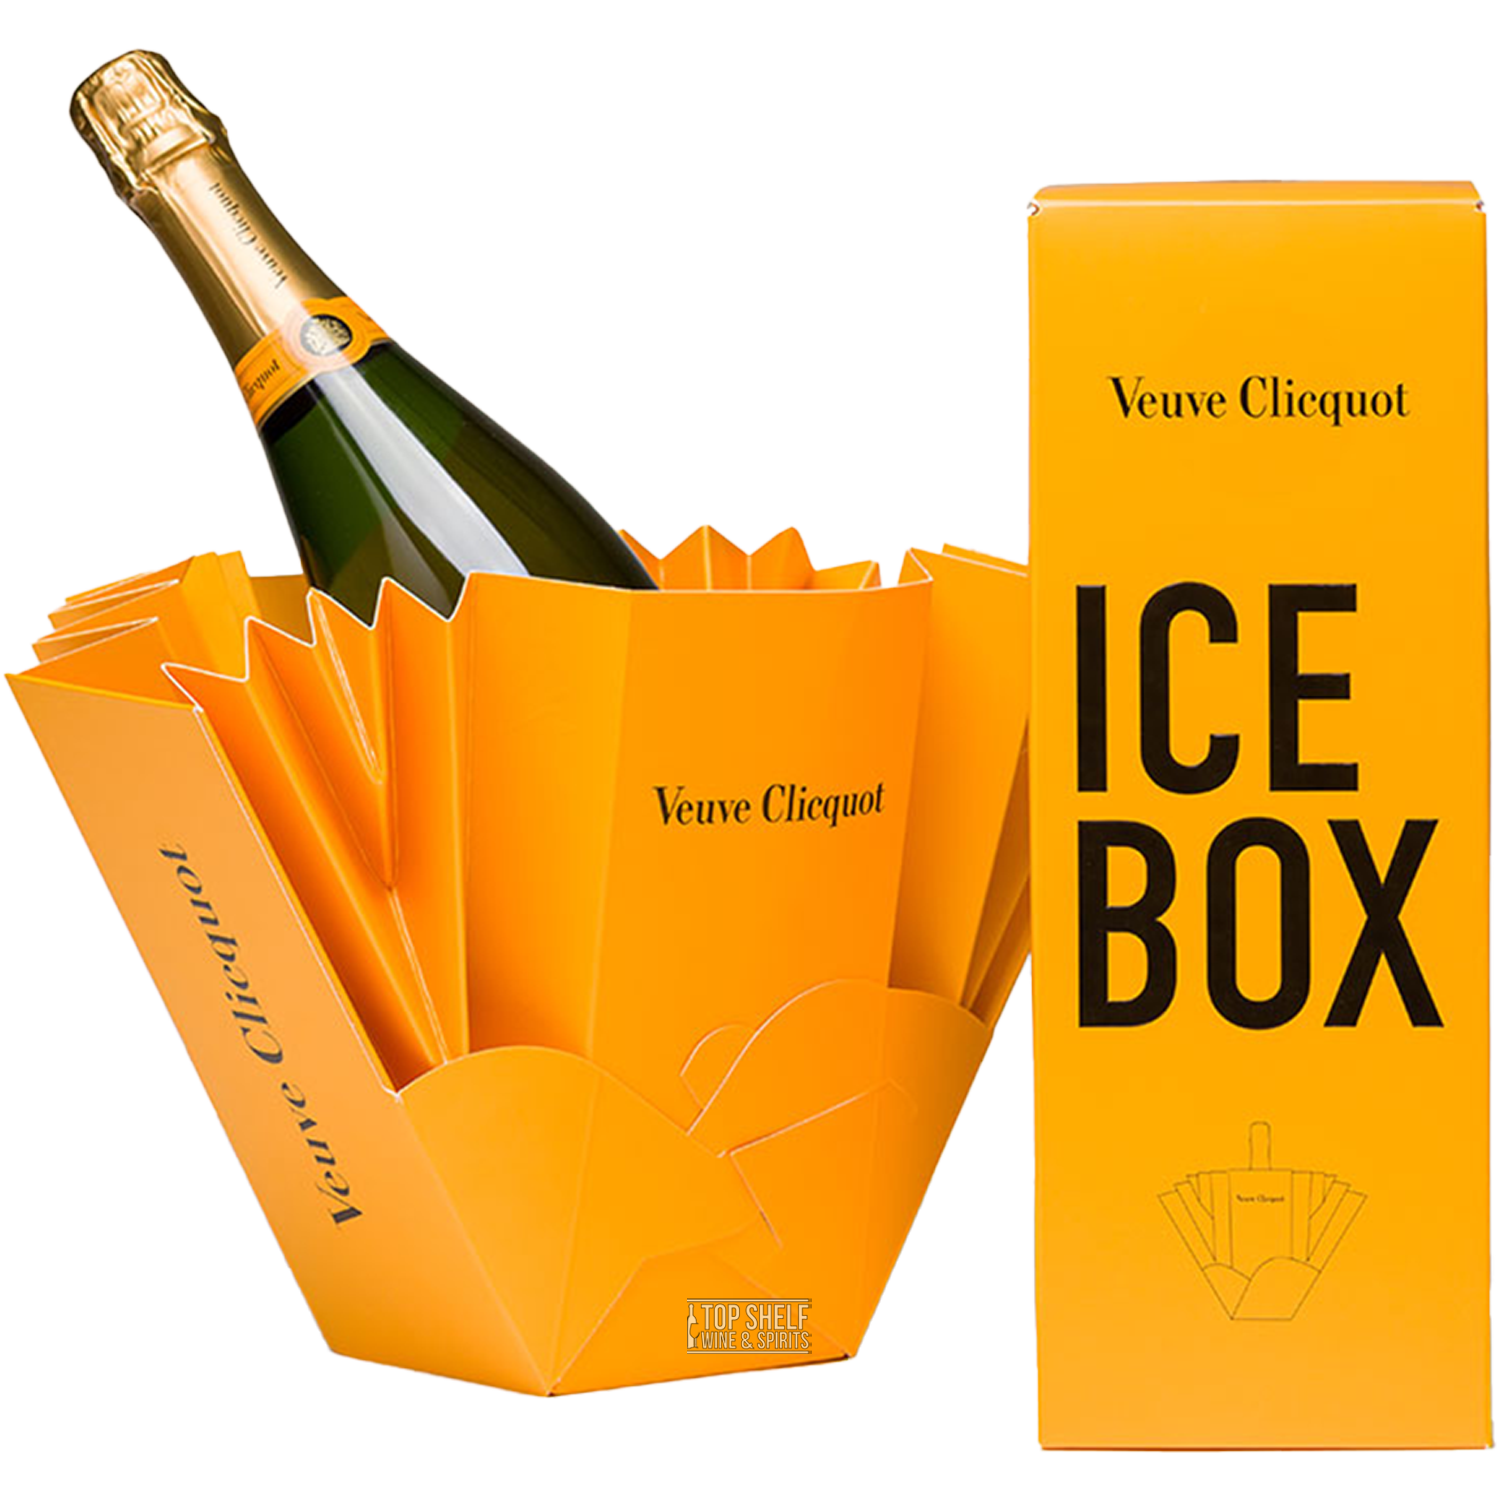 Veuve Clicquot Ice Box